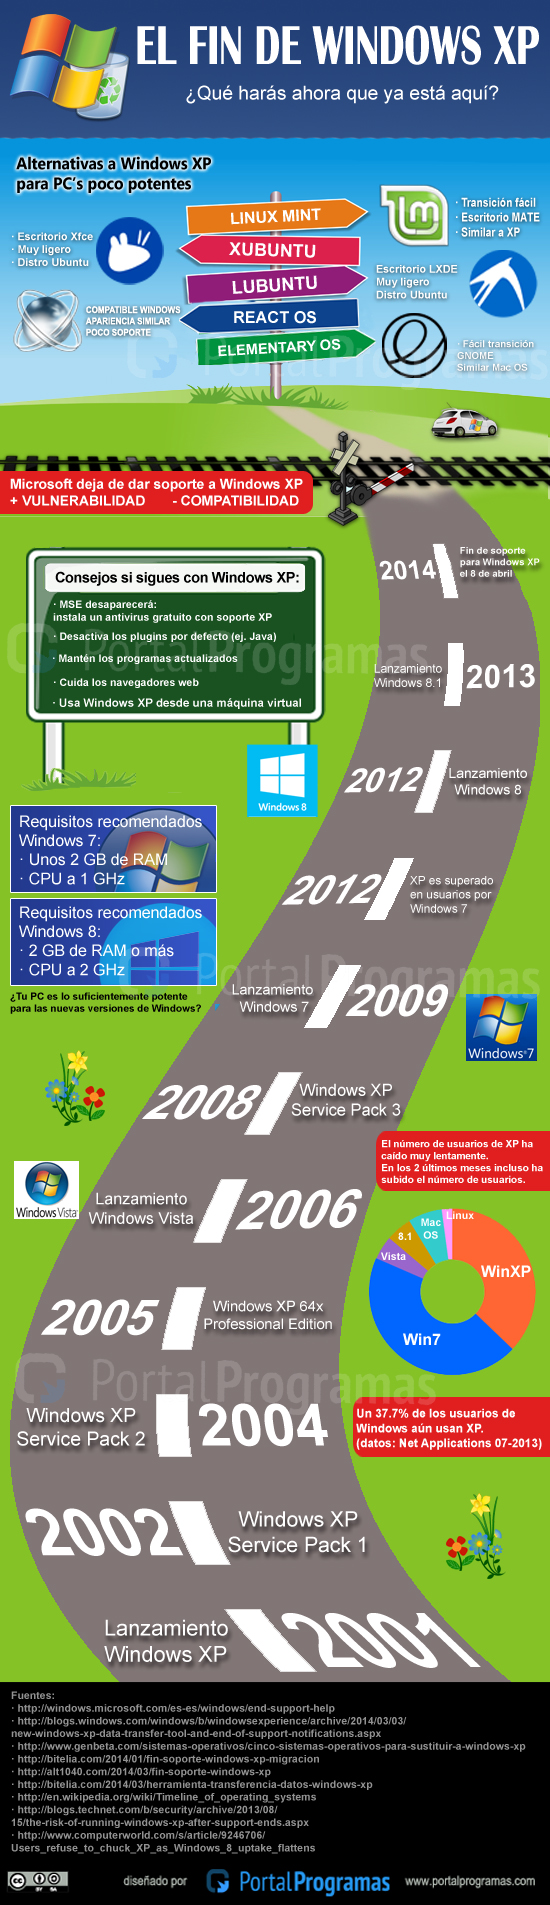 El fin de Windows XP - Infografía